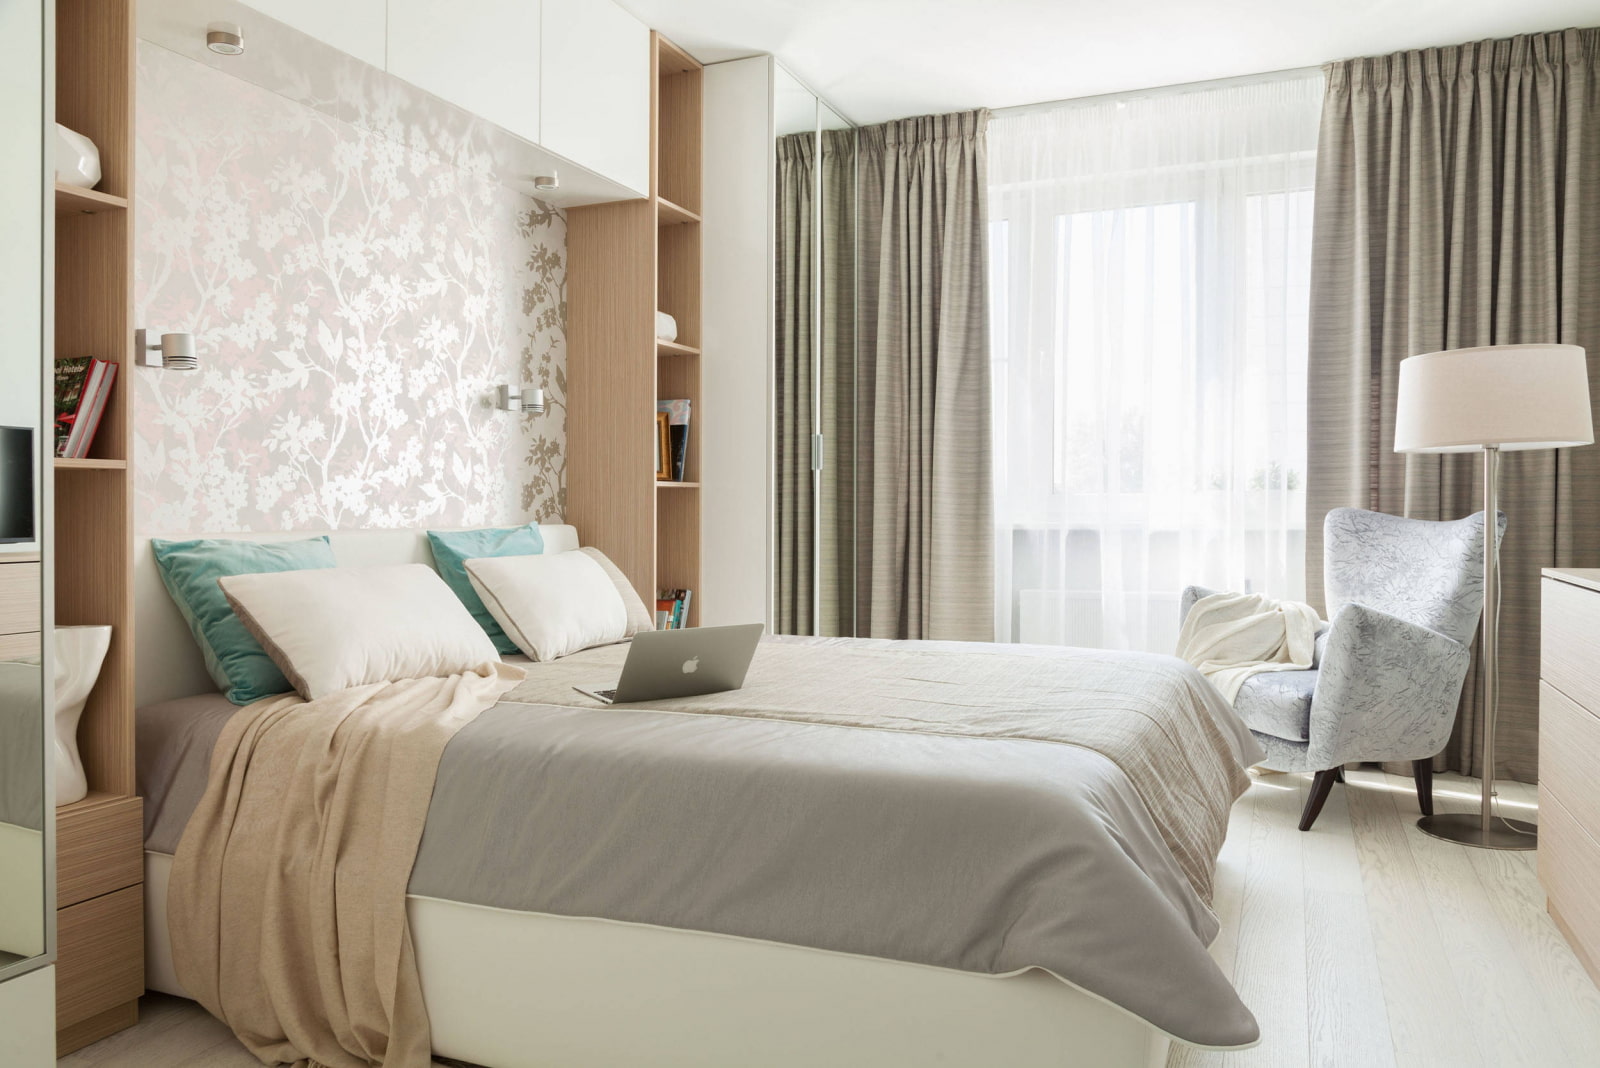 Современный дизайн спальни в теплых тонах фото